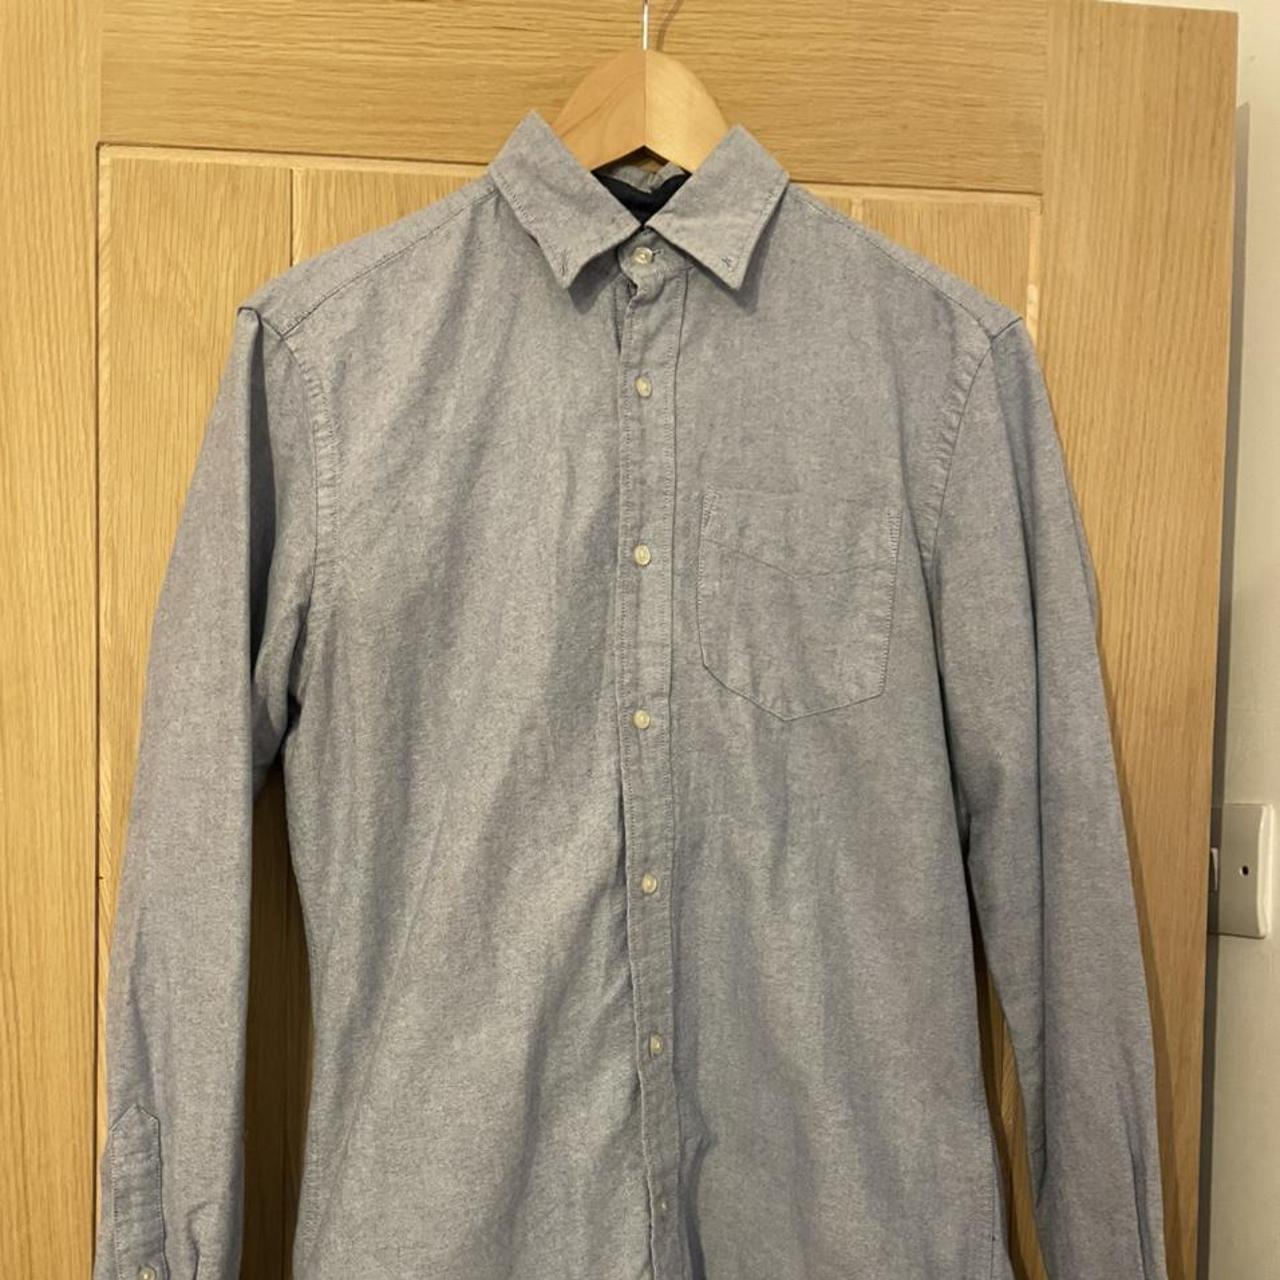 Men’s Next Oxford shirt Light blue, long sleeved... - Depop